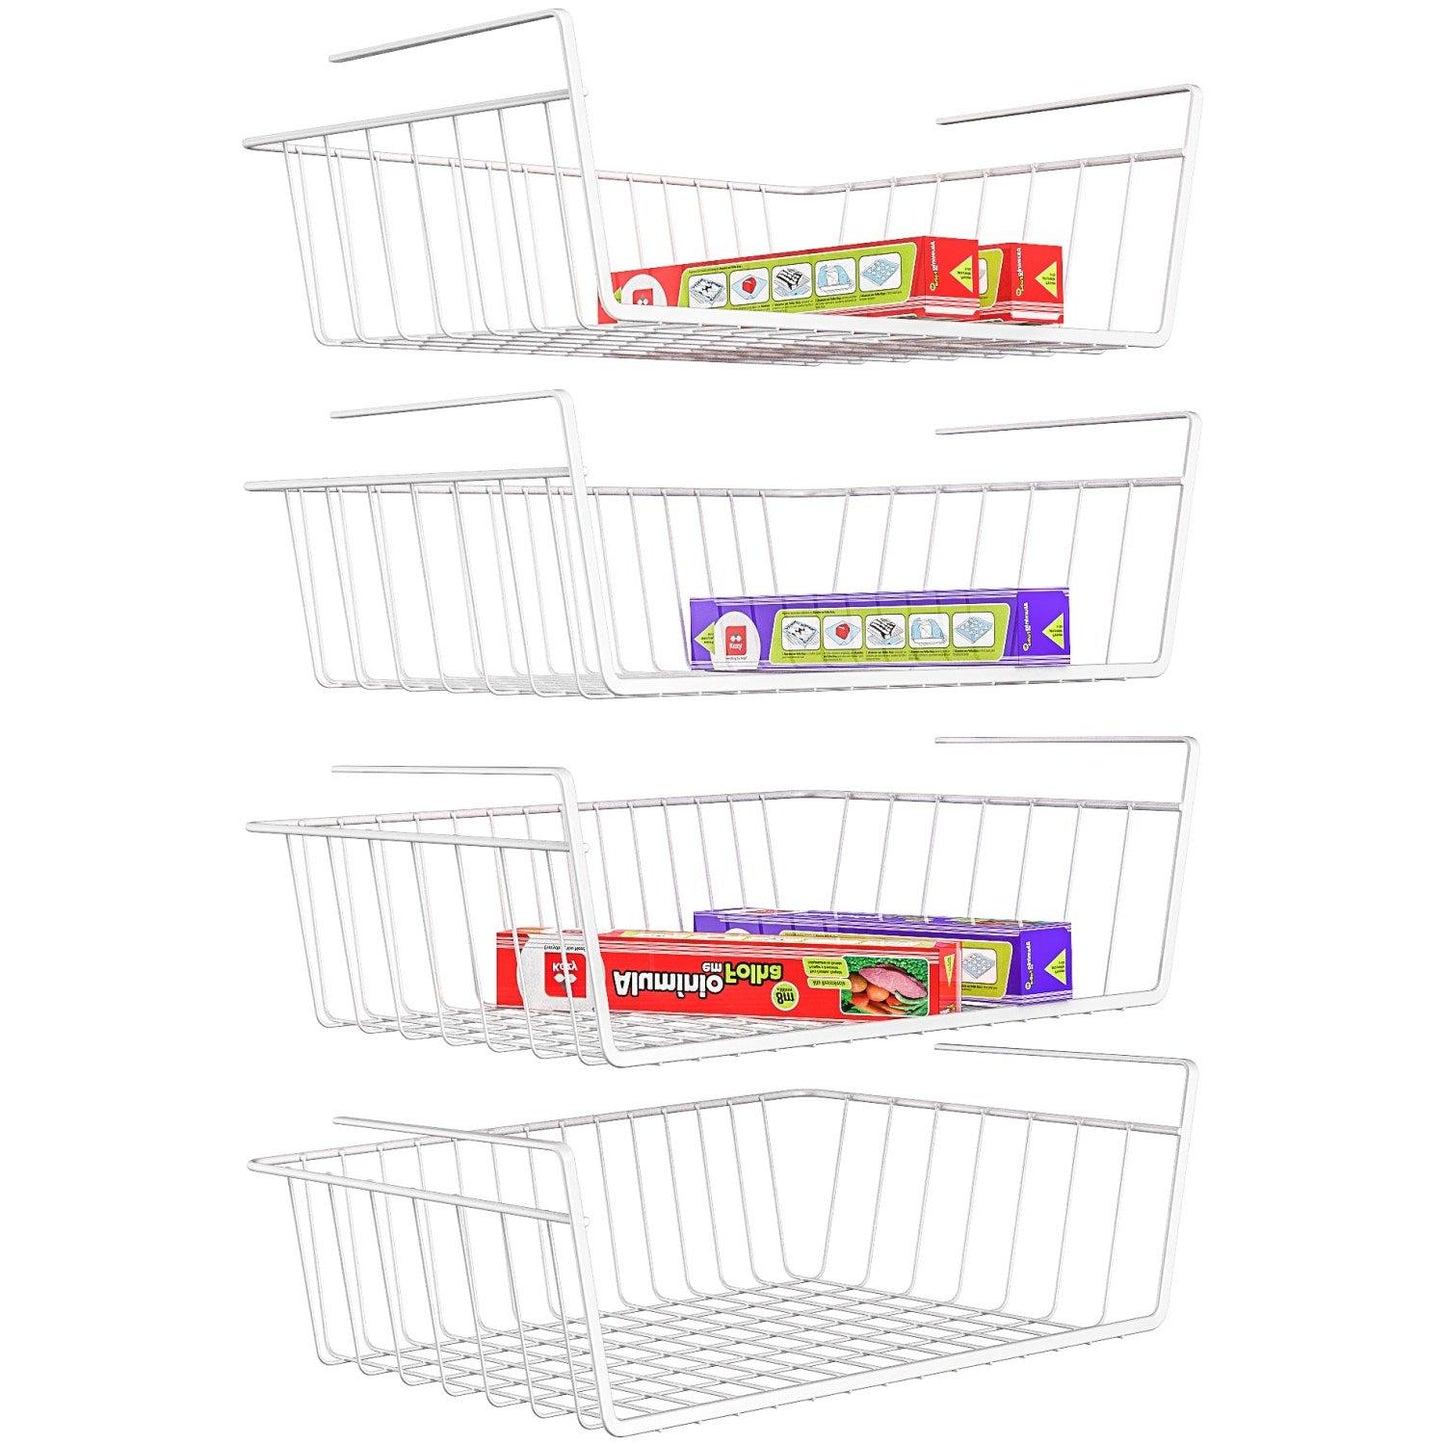 Veckle under shelf basket, veckle 4 pack stackable under cabinet